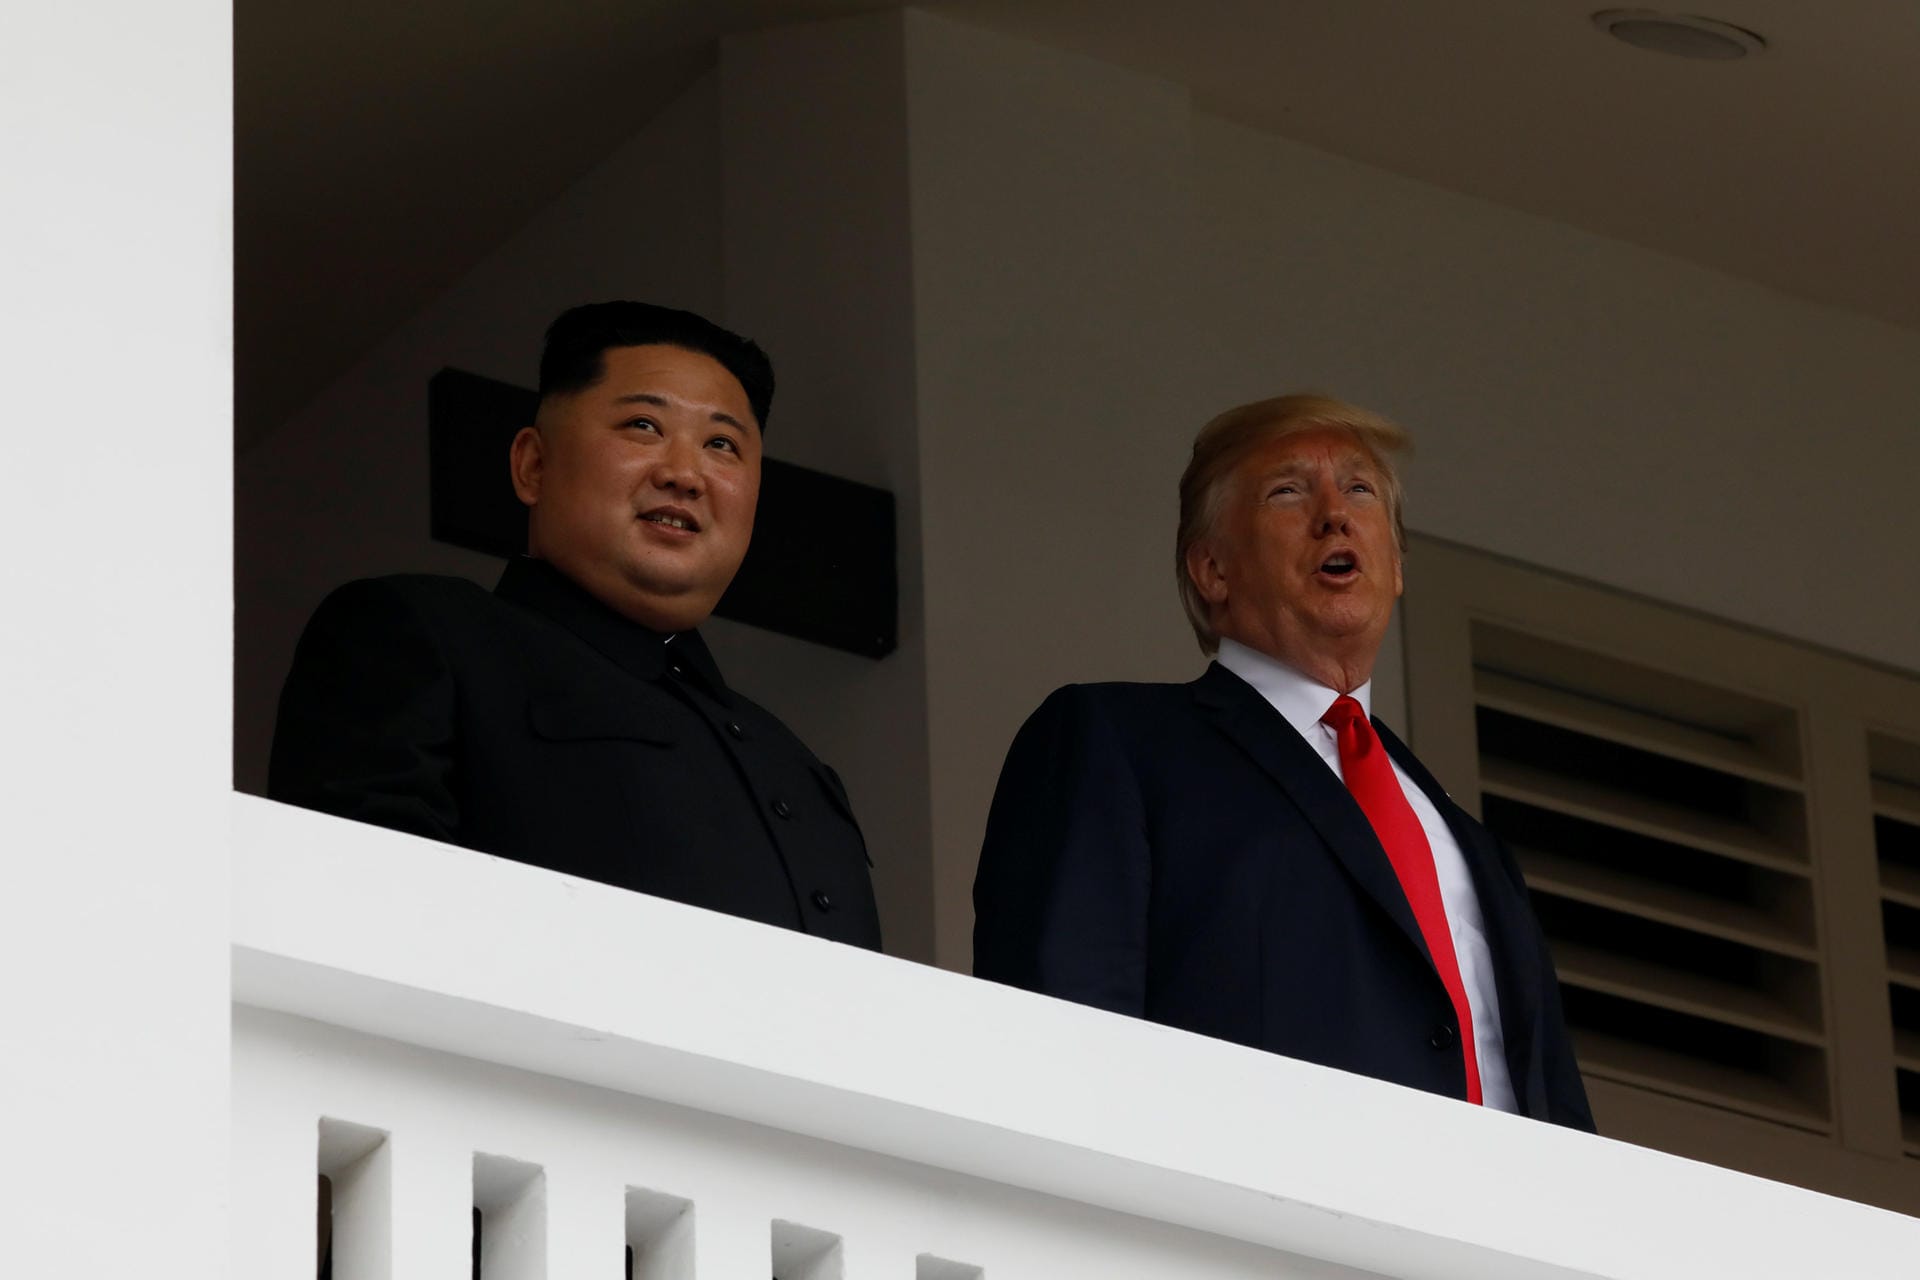 Exakt 48 Minuten hat das Vier-Augen-Gespräch zwischen Donald Trump und Kim Jong Un gedauert. "Es war sehr, sehr gut", sagt Donald Trump und spricht von einem "ausgezeichneten Verhältnis".